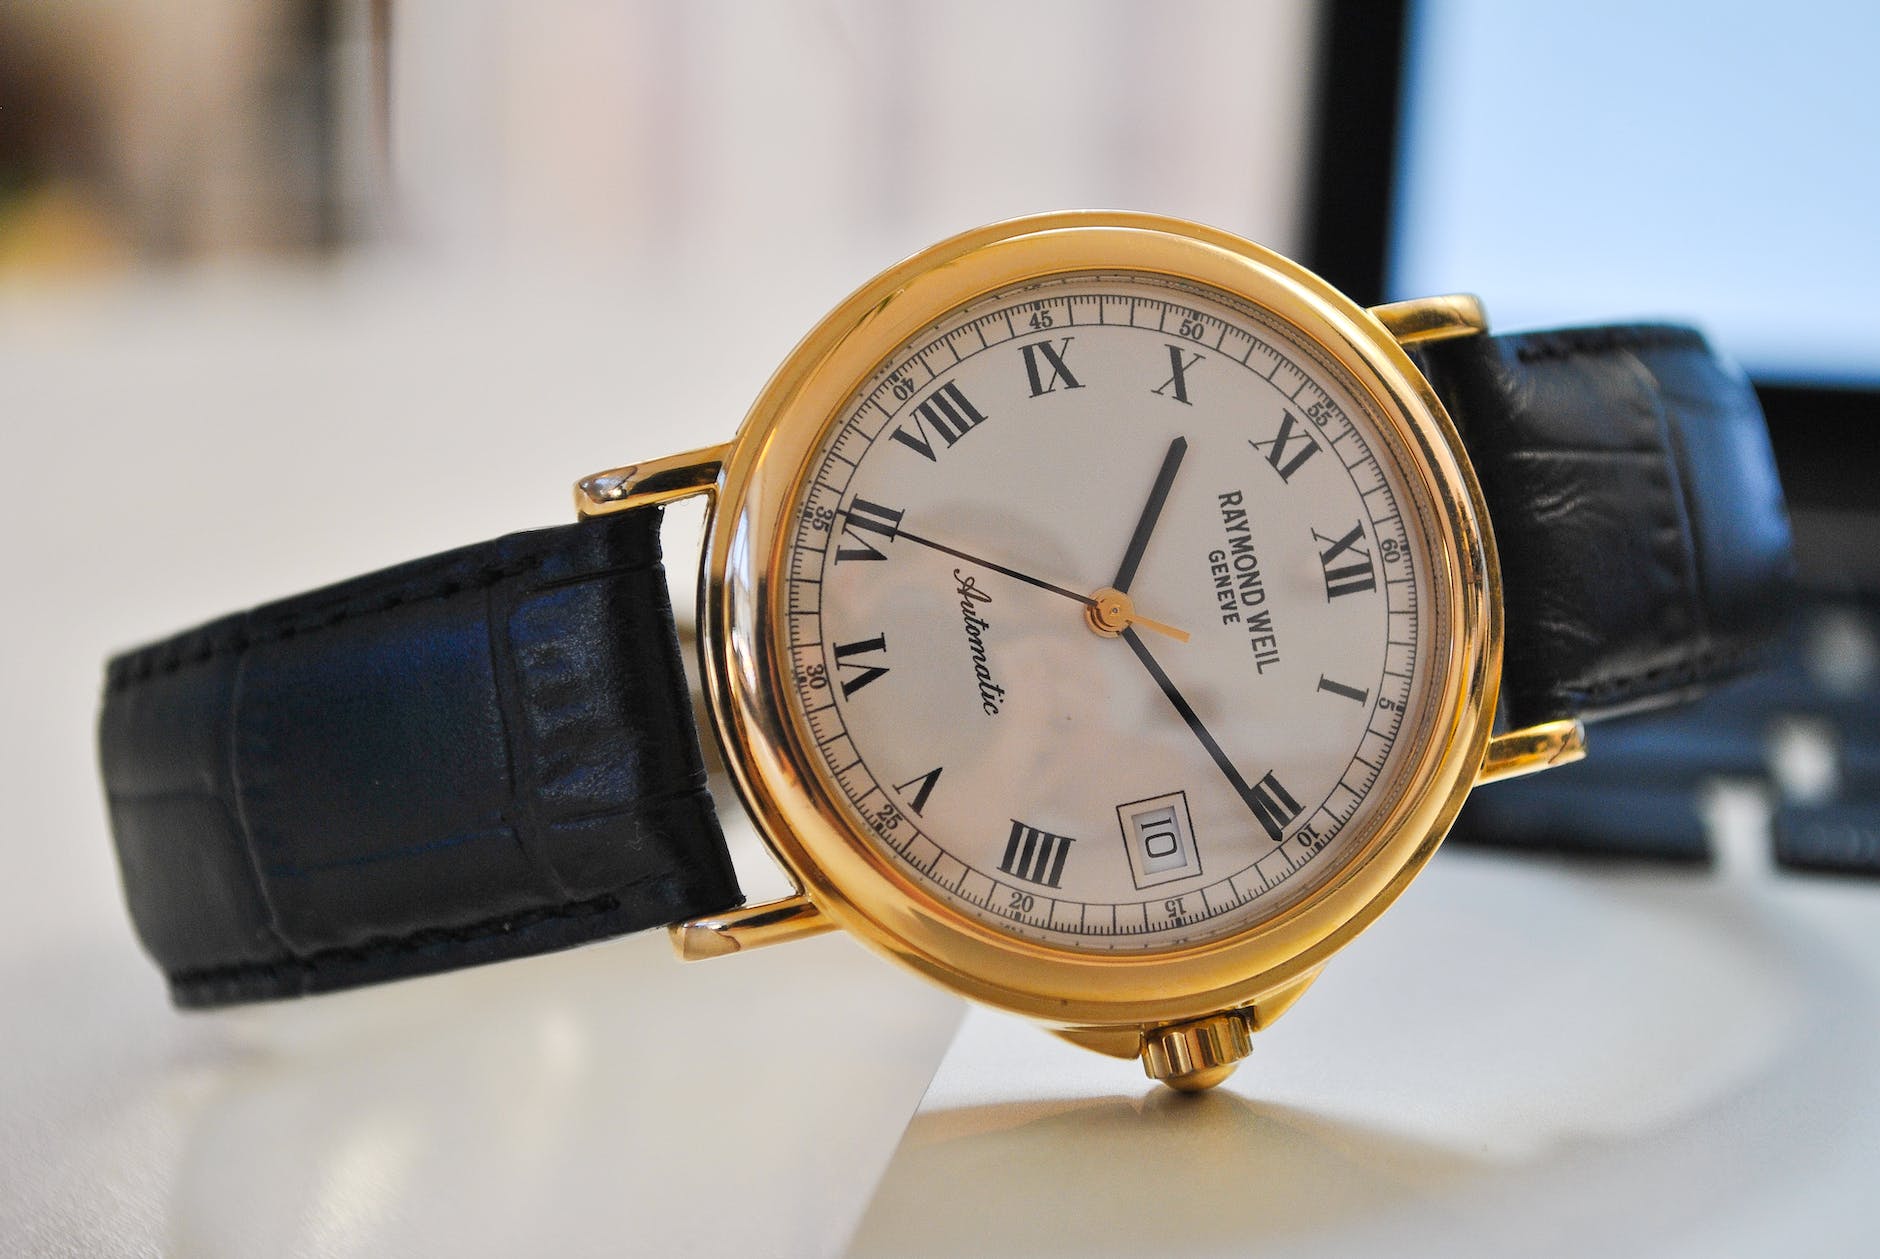 Buy Vintage Watch, Unisex Watch, Wristwatches, Slim Watch, Retro Watches,  Old Watches, Minimalist Watch, Mens Watch Online in India - Etsy